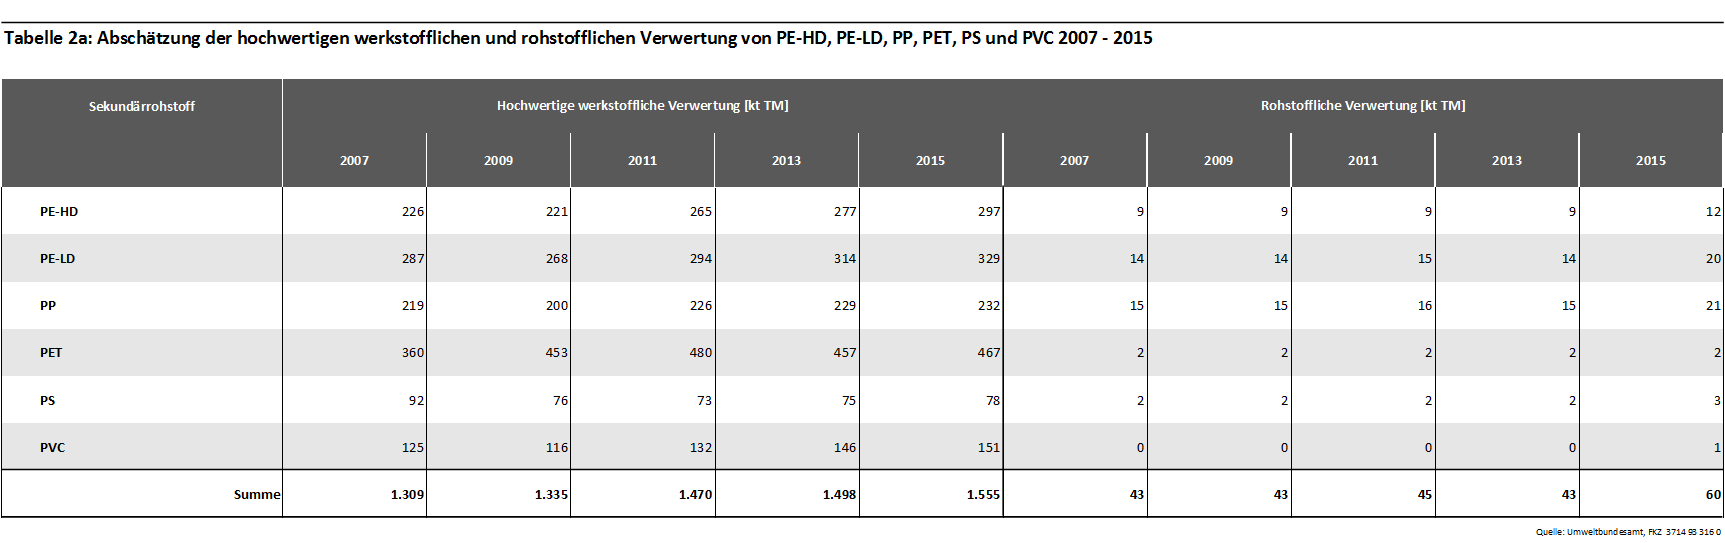 Tabelle 2a: Abschätzung der hochwertigen werkstofflichen und rohstofflichen Verwertung von PE-HD, PE-LD, PP, PET, PS und PVC 2007 - 2015